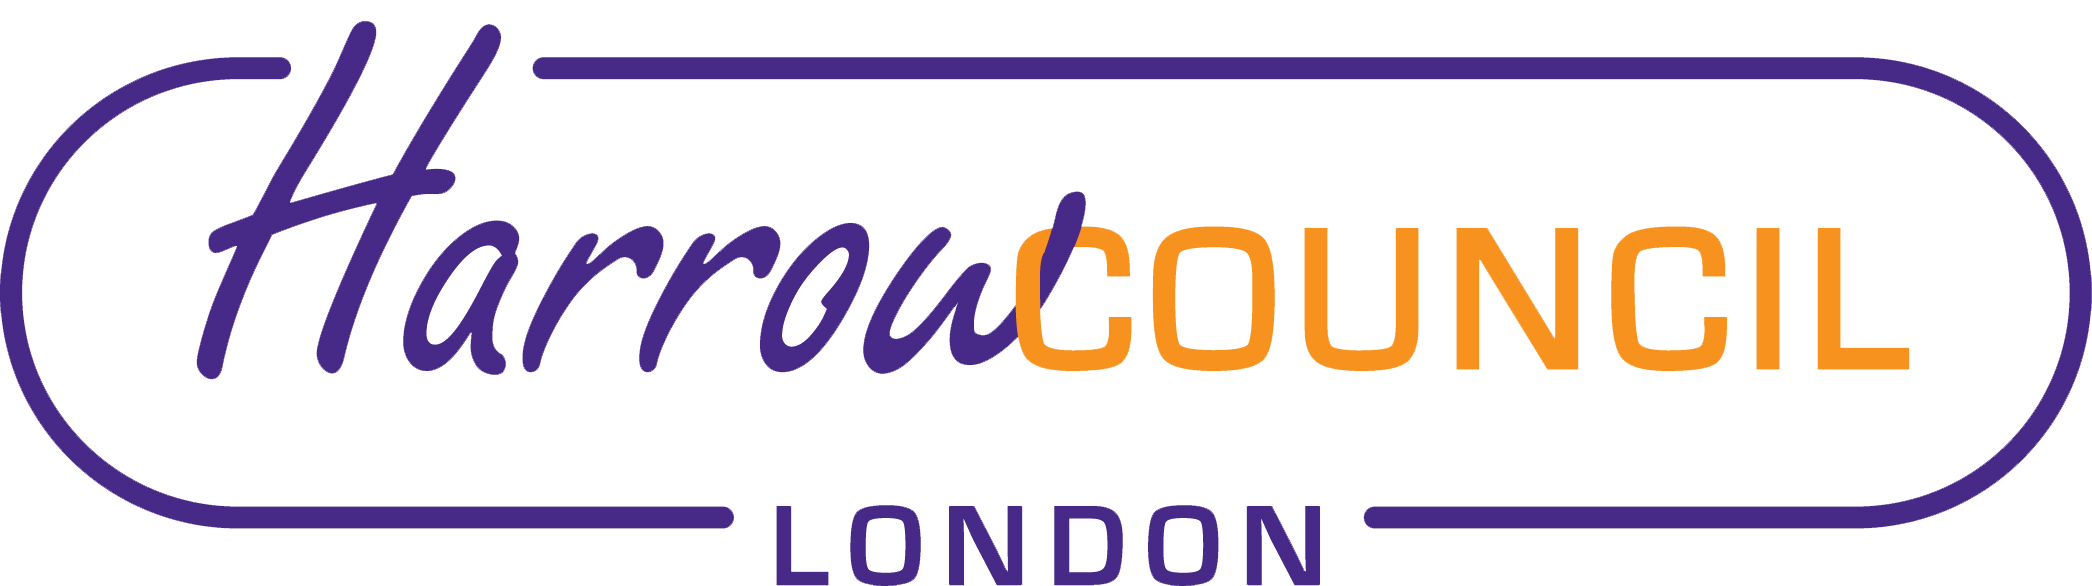 Harrow council logo